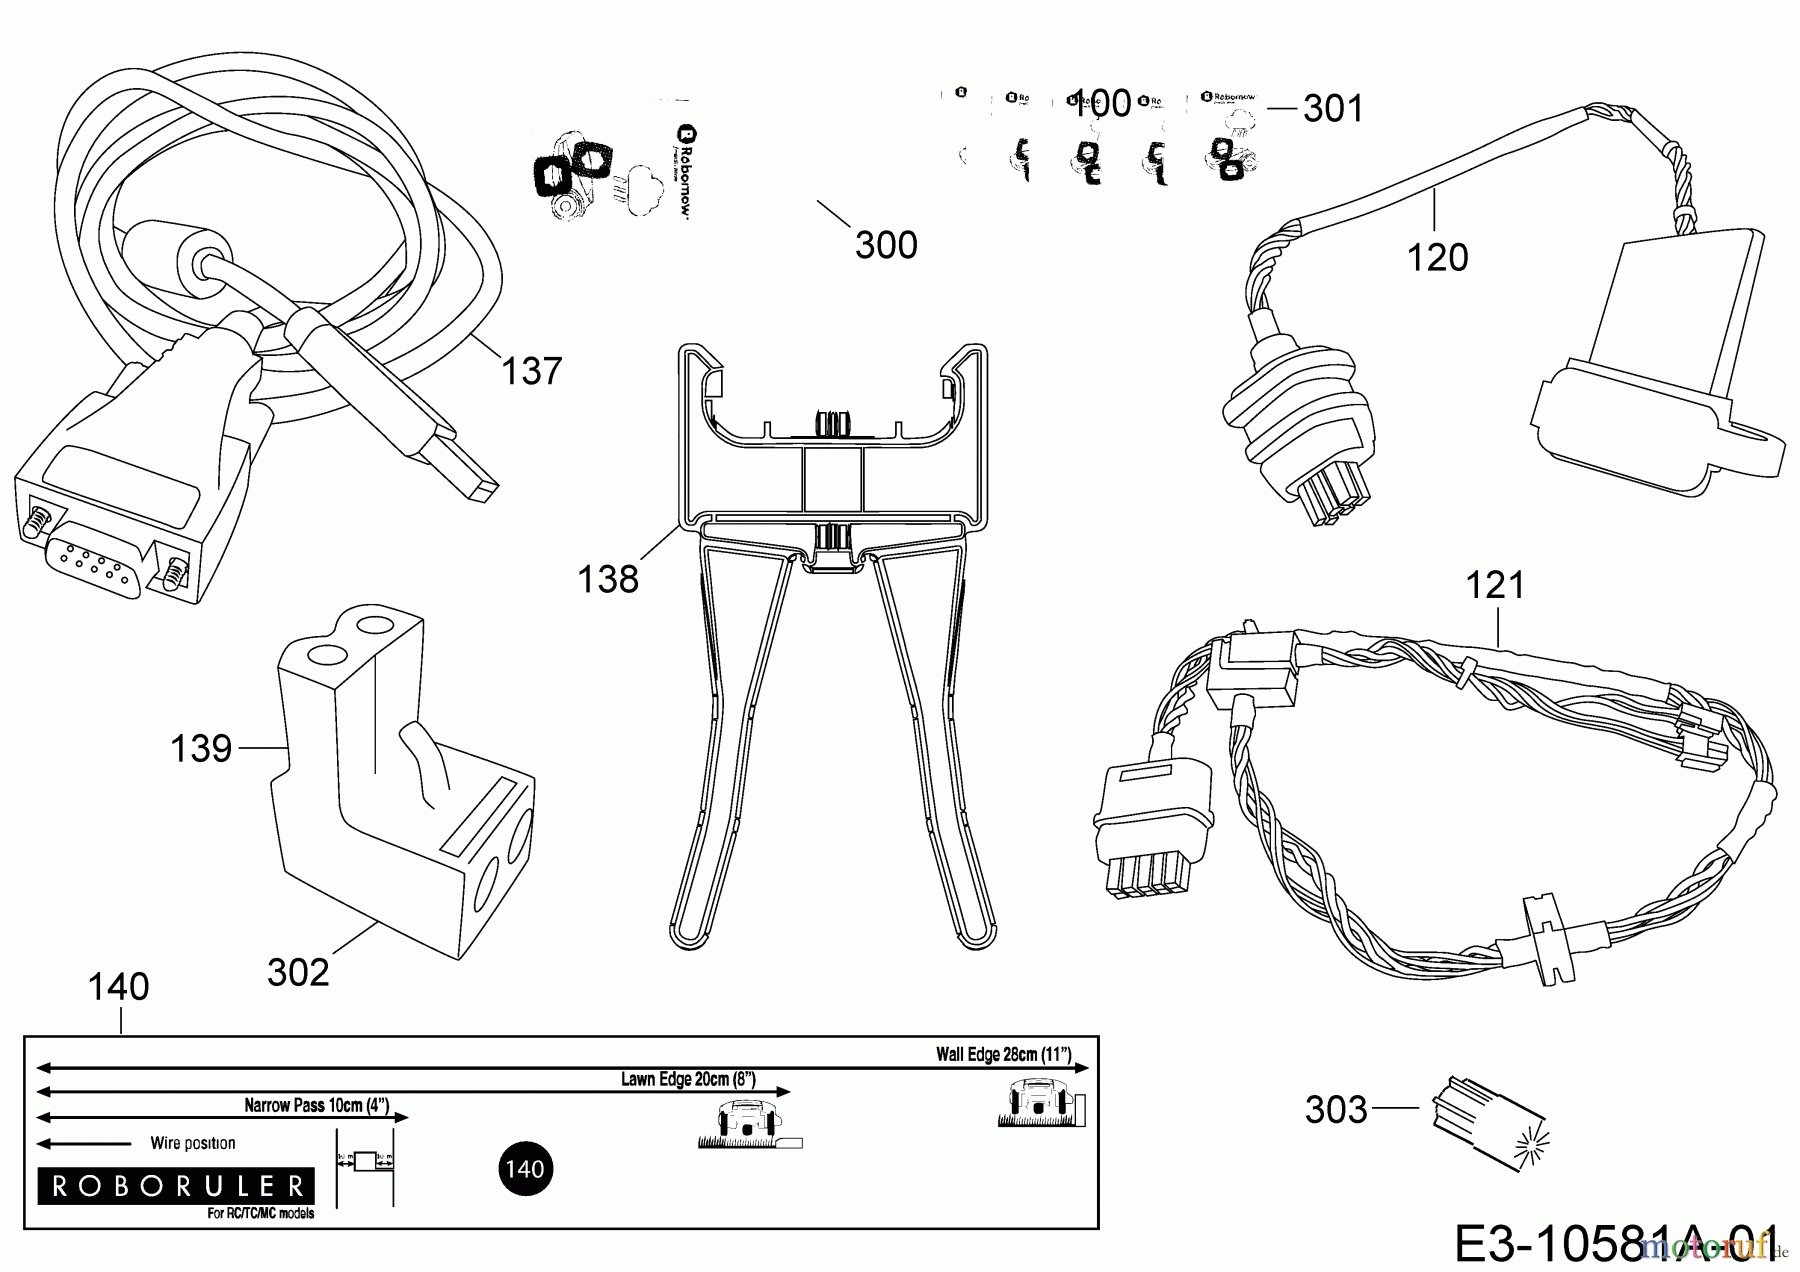  Robomow Mähroboter MC300 (White) PRD7004YW  (2014) Kabel, Kabelanschluß, Regensensor, Werkzeug